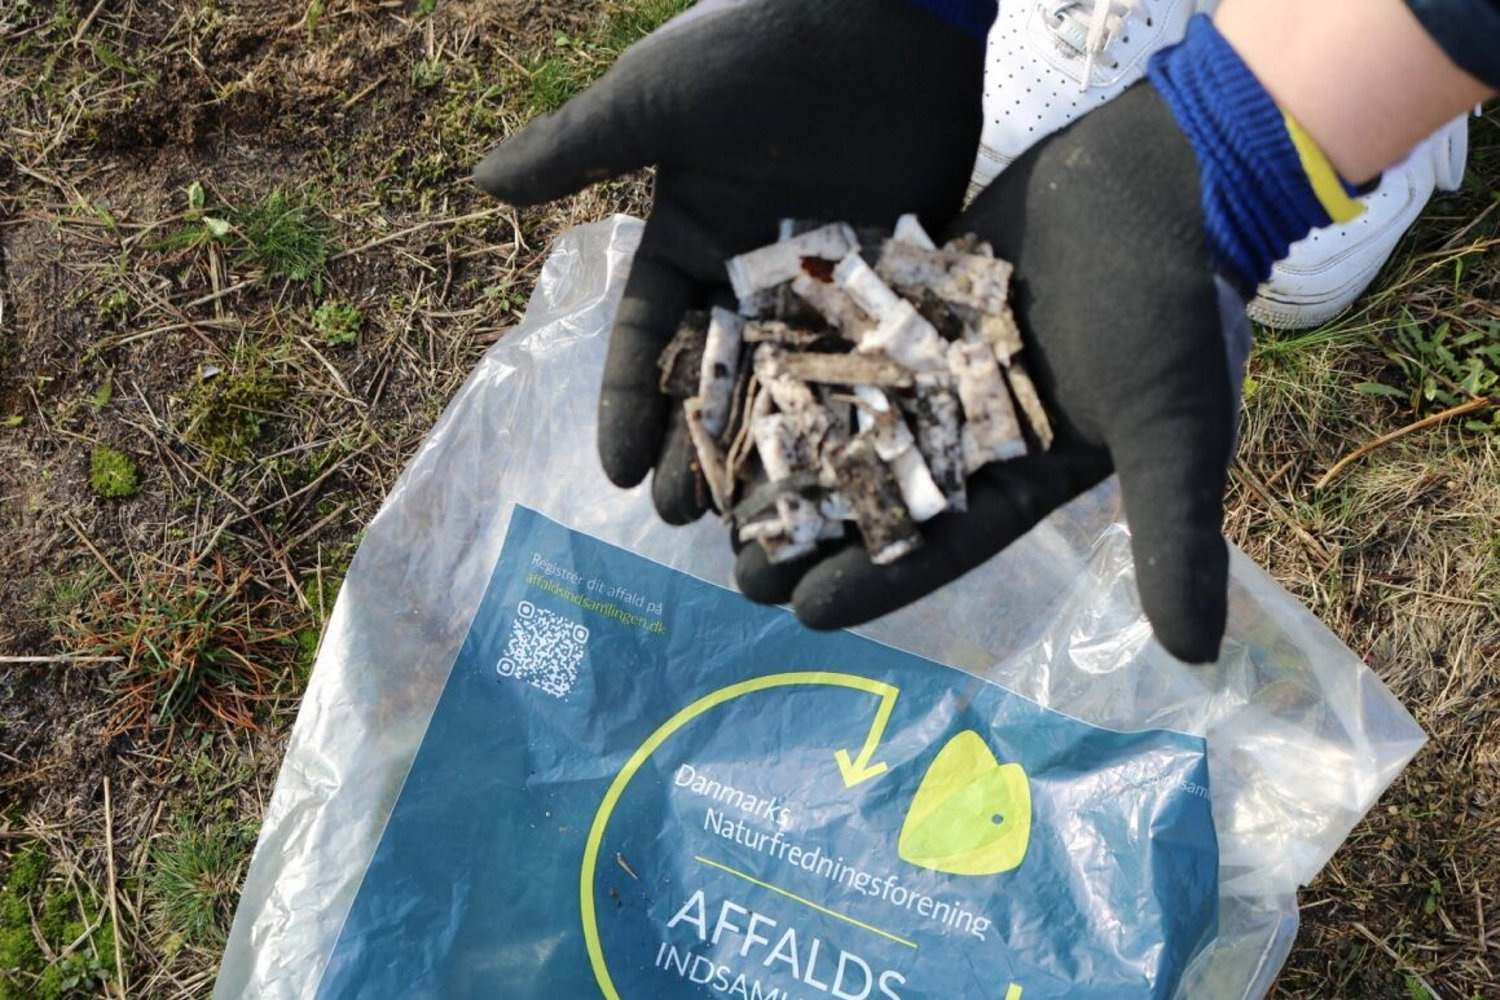 115.000 nikotinposer fundet i naturen af affaldsindsamlere